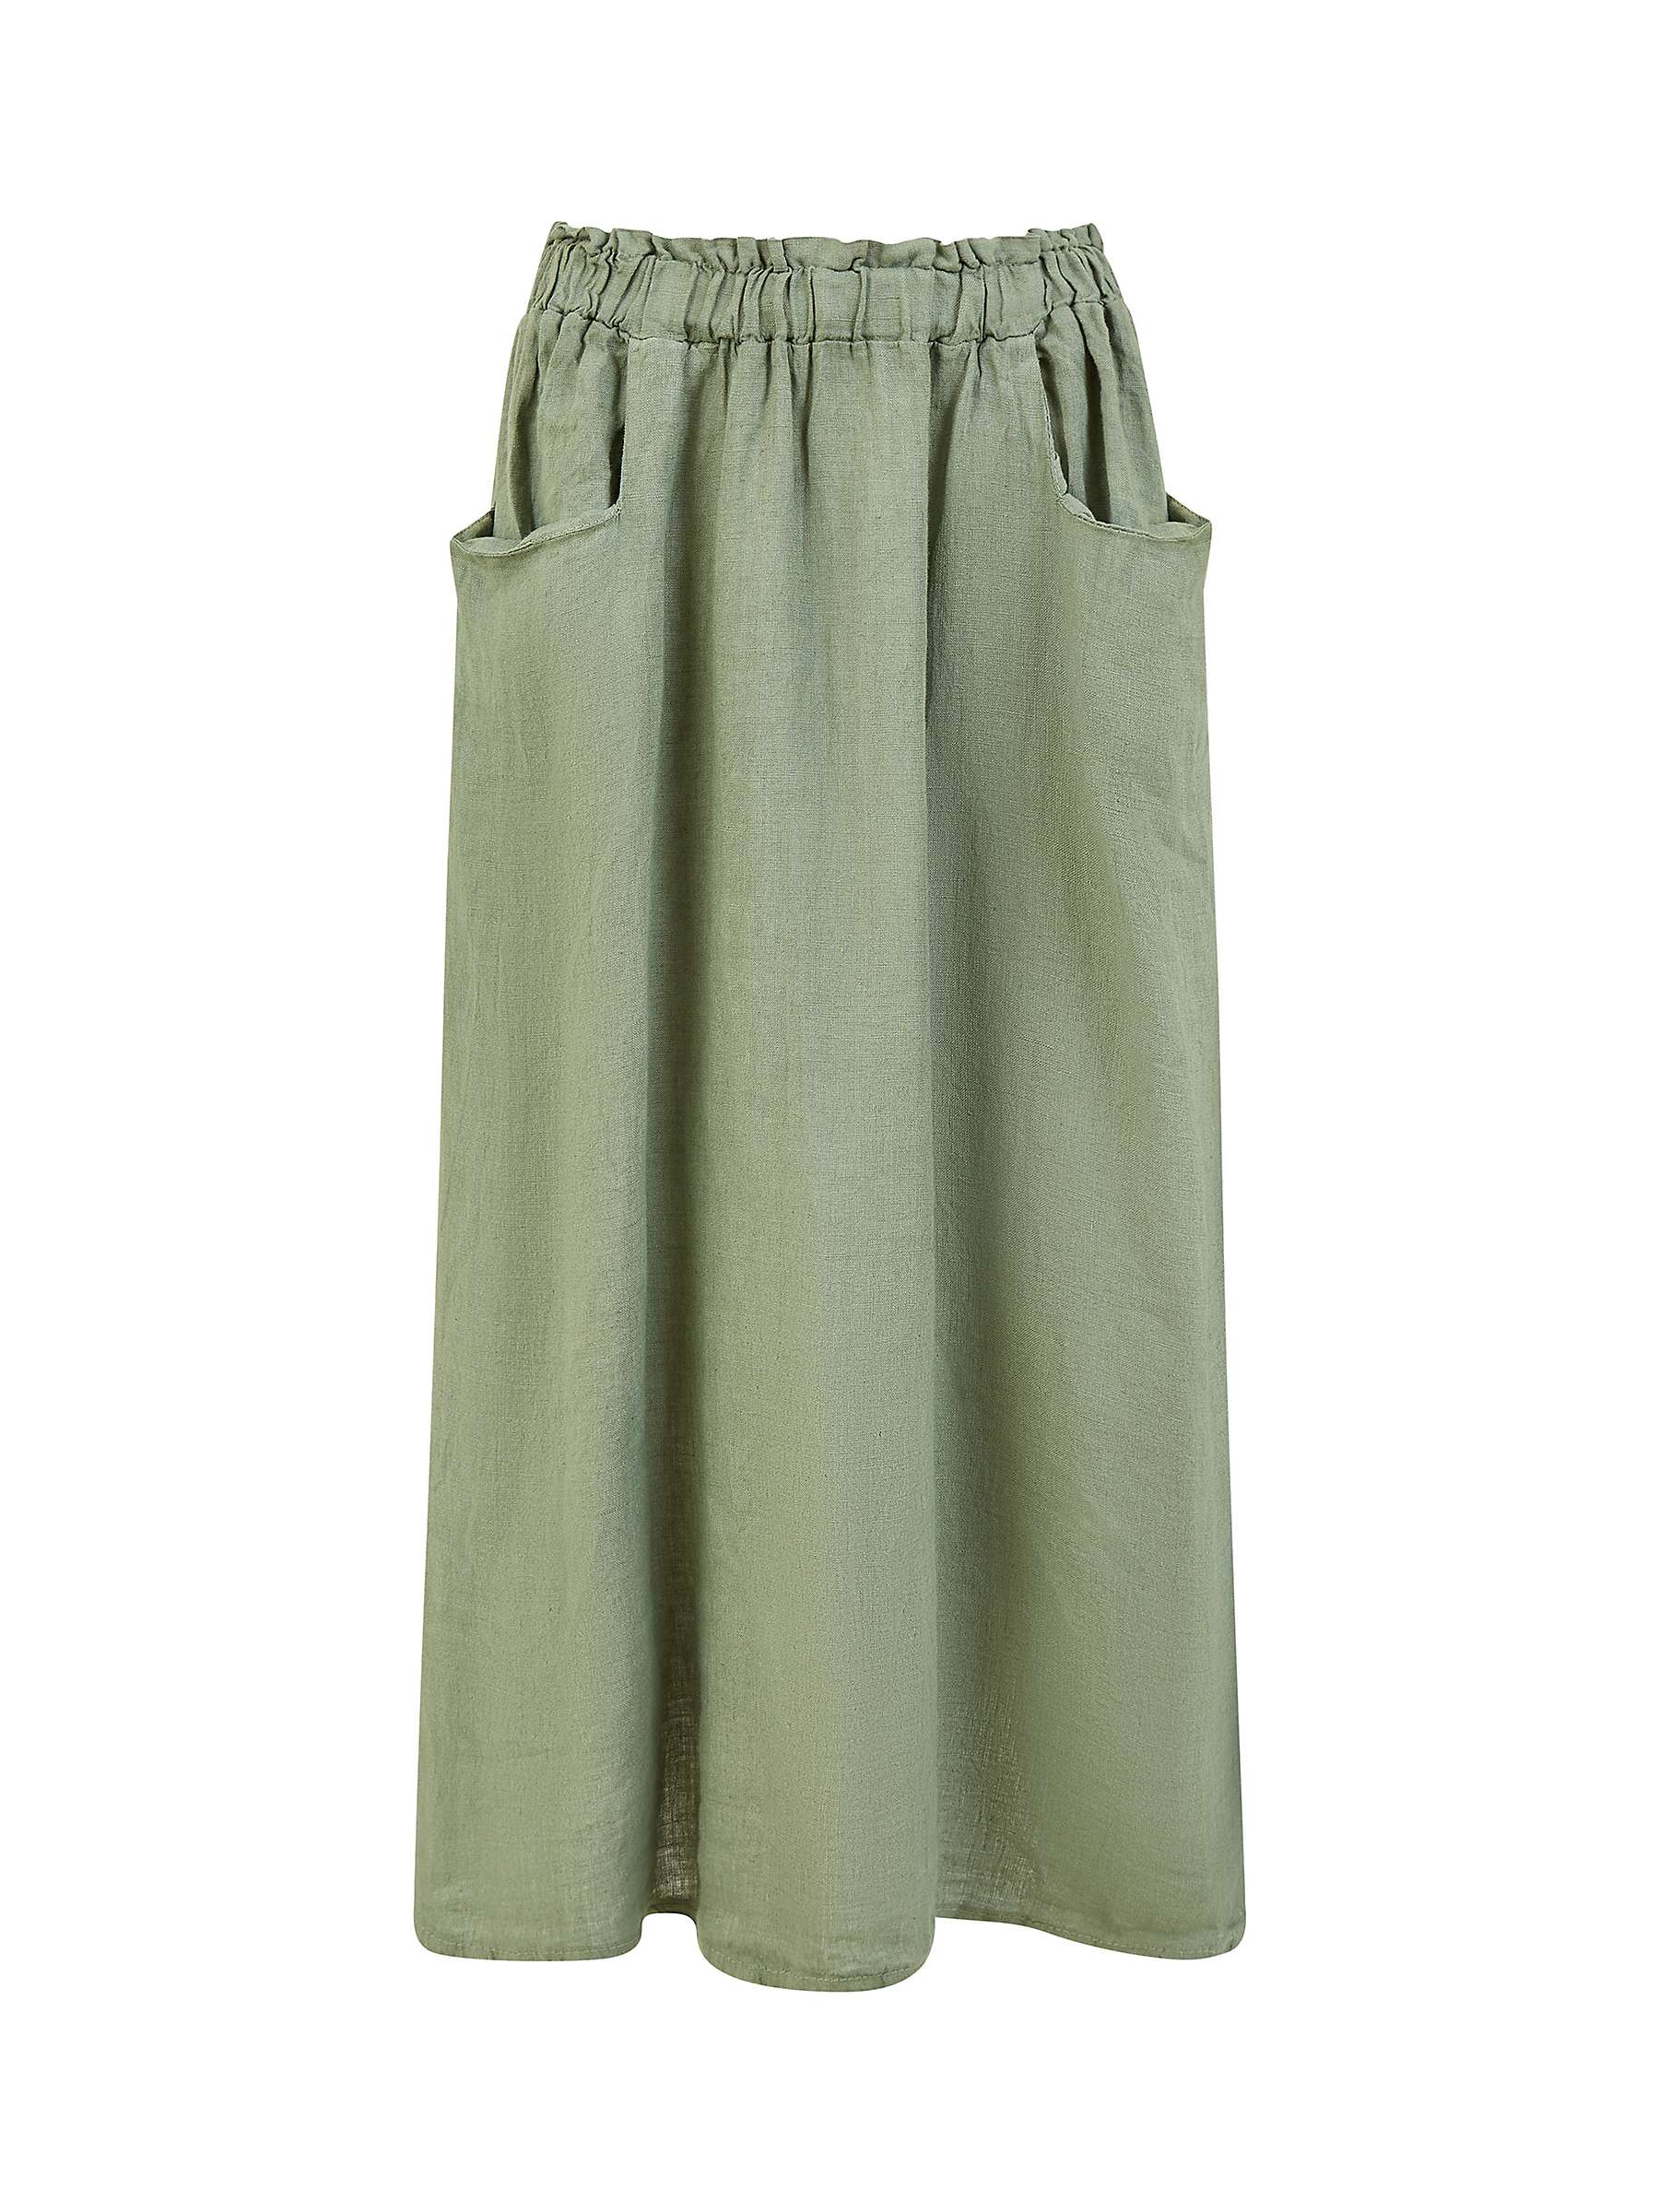 Buy Yumi Italian Linen Skirt Online at johnlewis.com